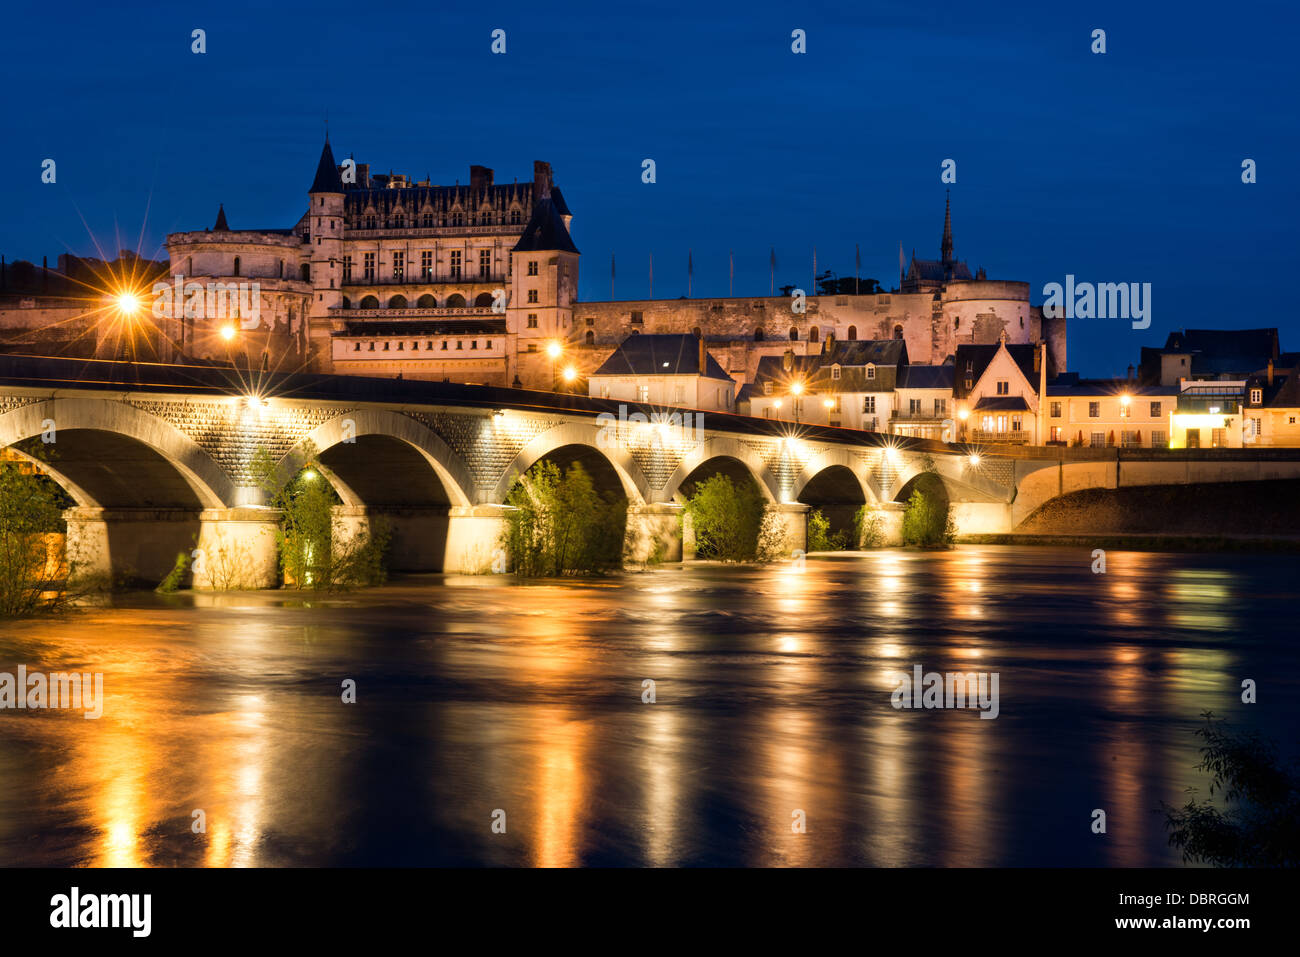 Le château historique de la ville, pont et à Amboise illuminée le soir et se reflètent dans la Loire, France Banque D'Images